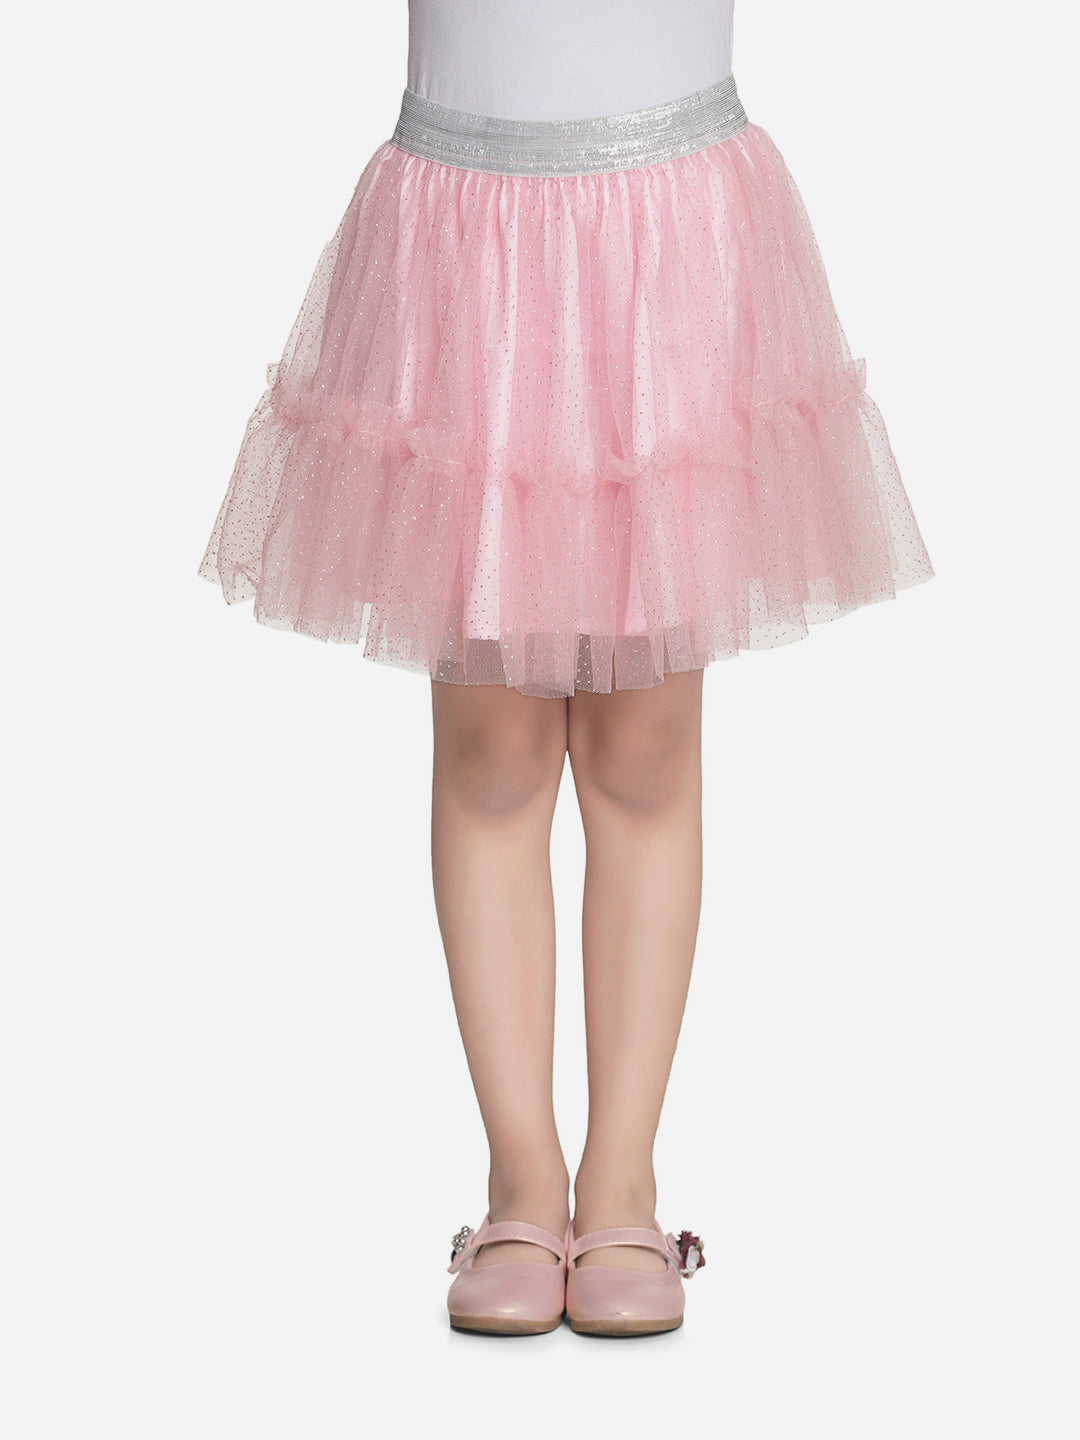 Girls Glitter Pink Net Skirt with Silver Elastic Waist